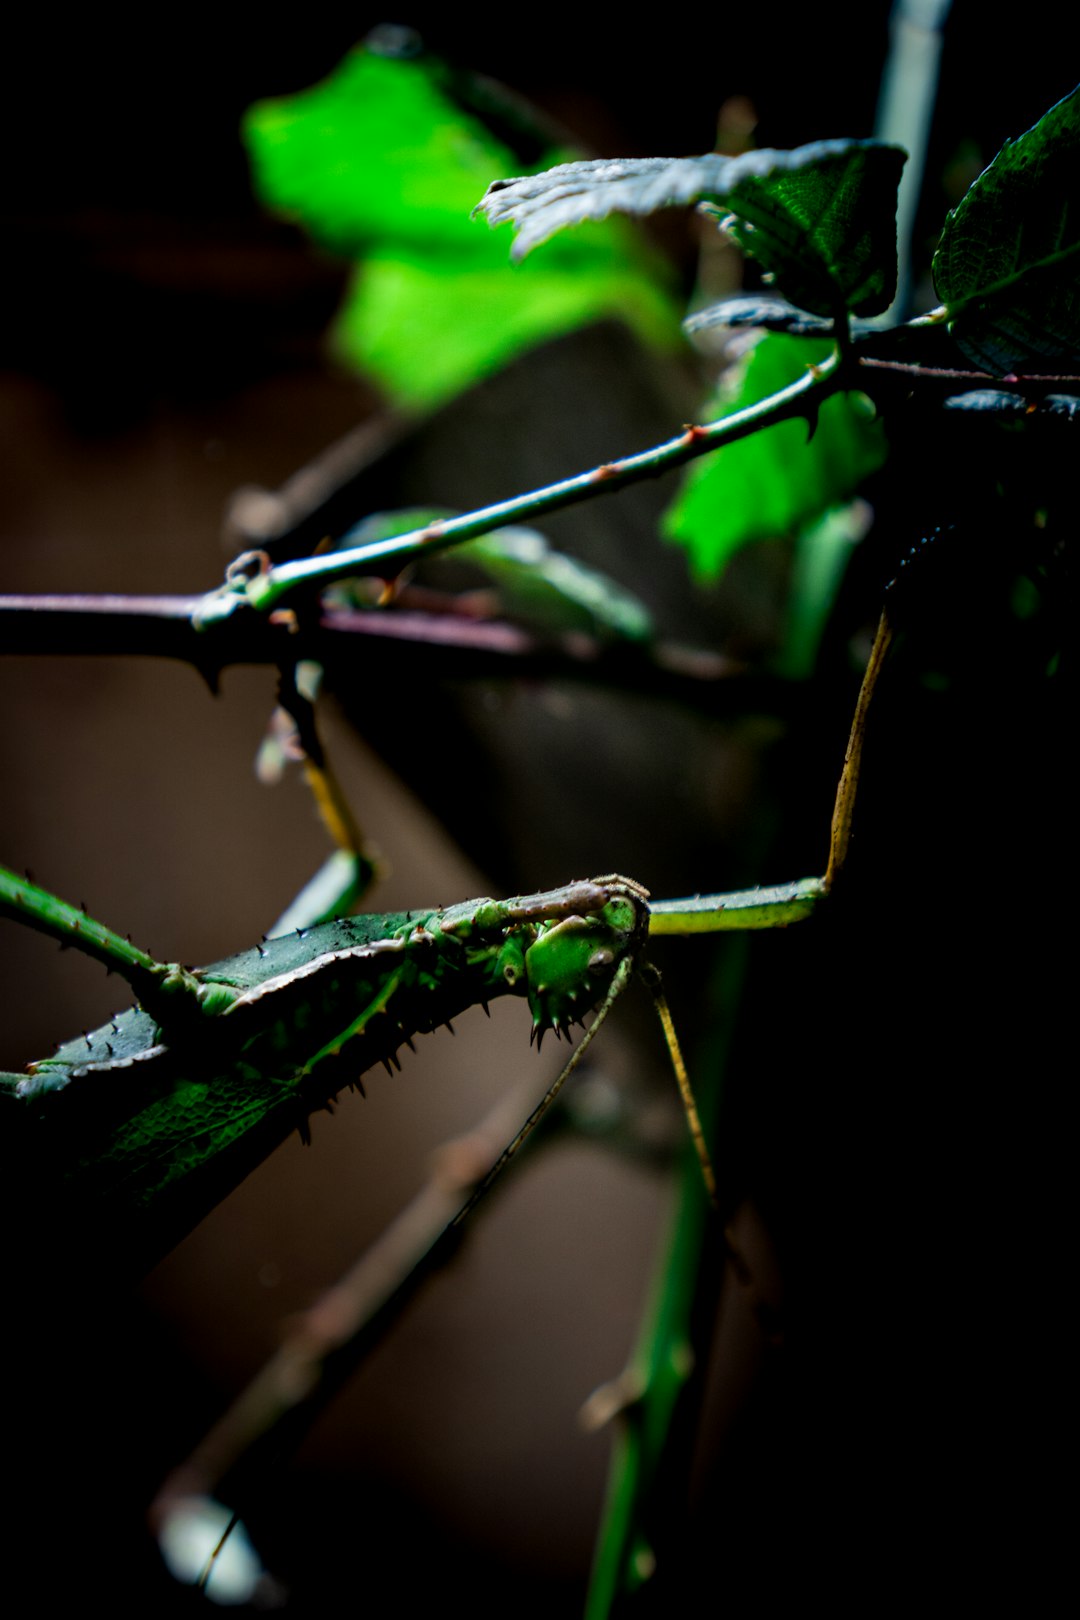 green praying mantis on brown stem in close up photography during daytime